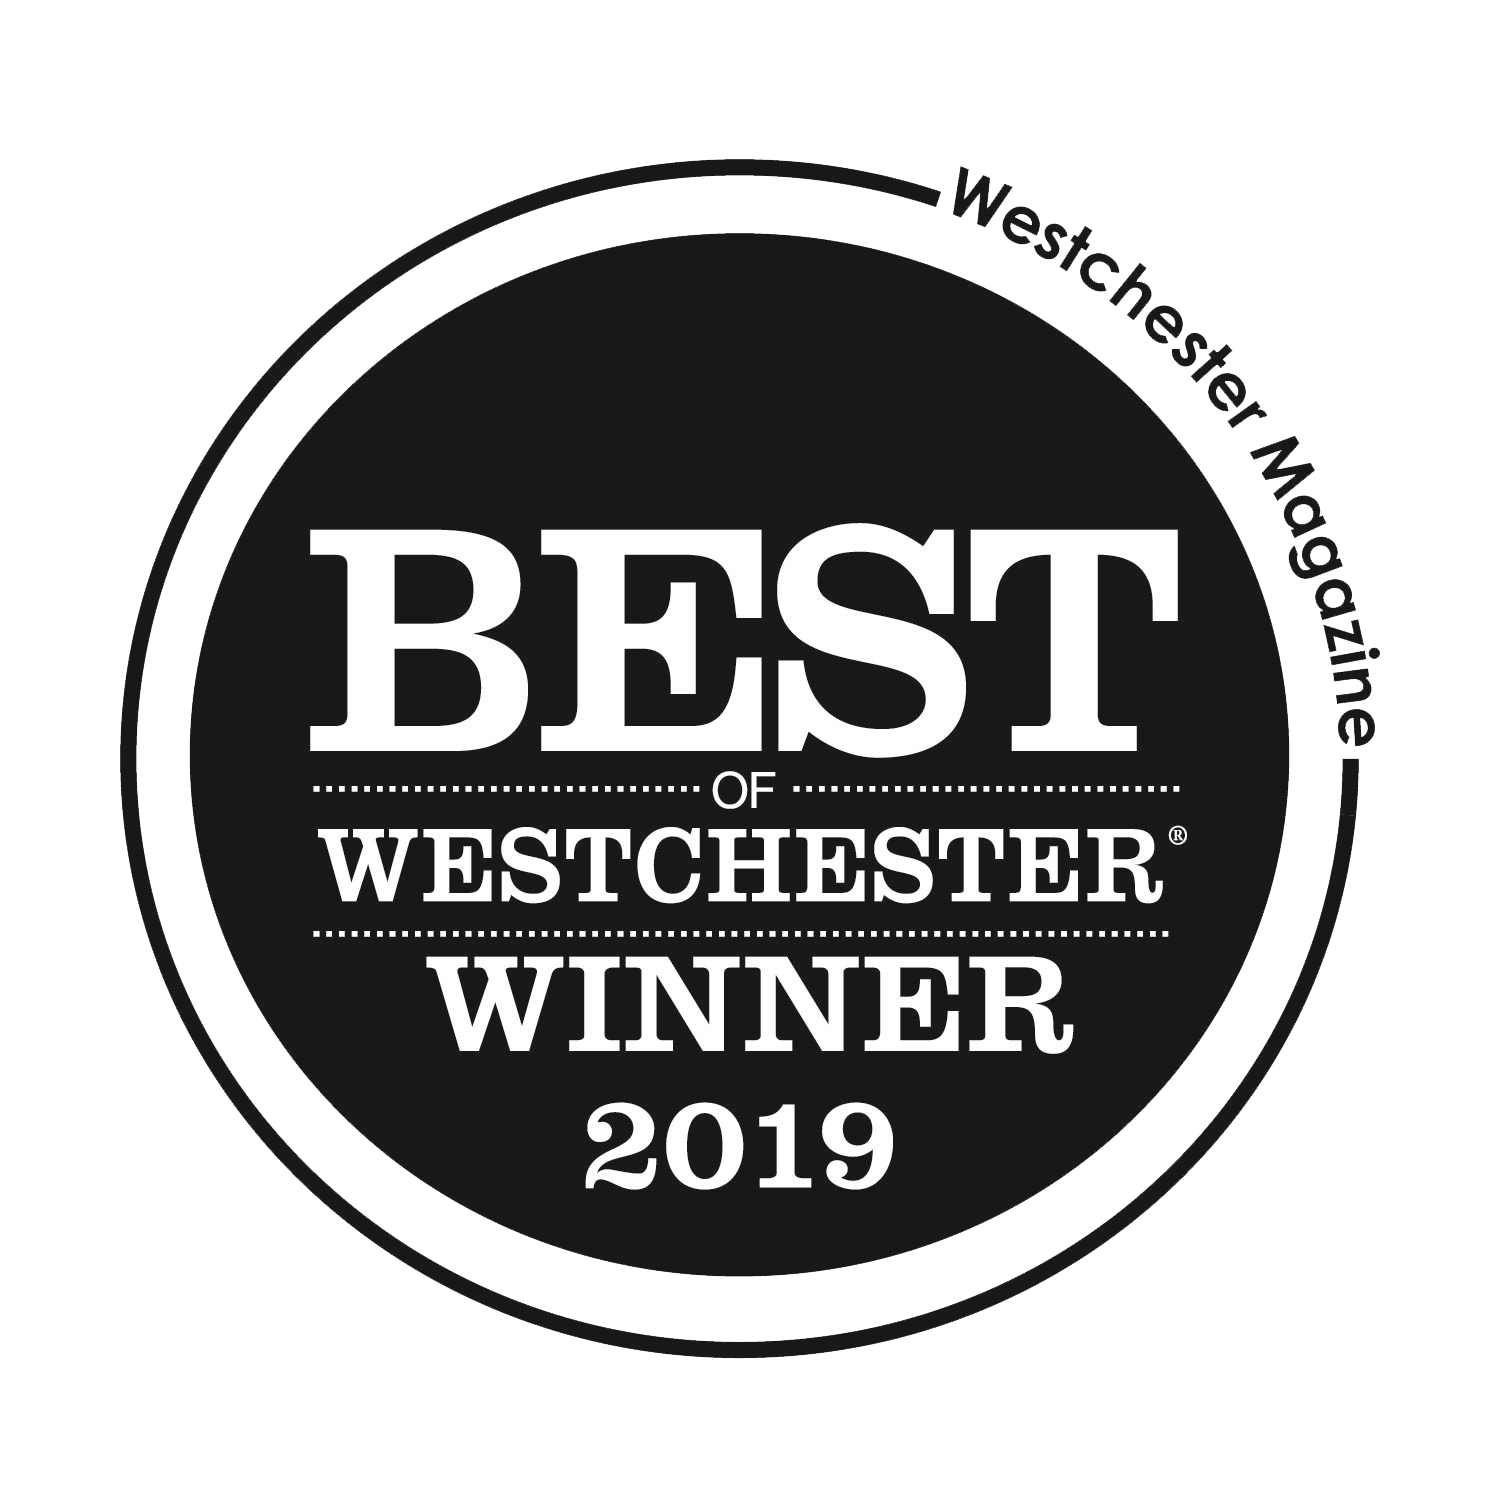 Best westchester logo